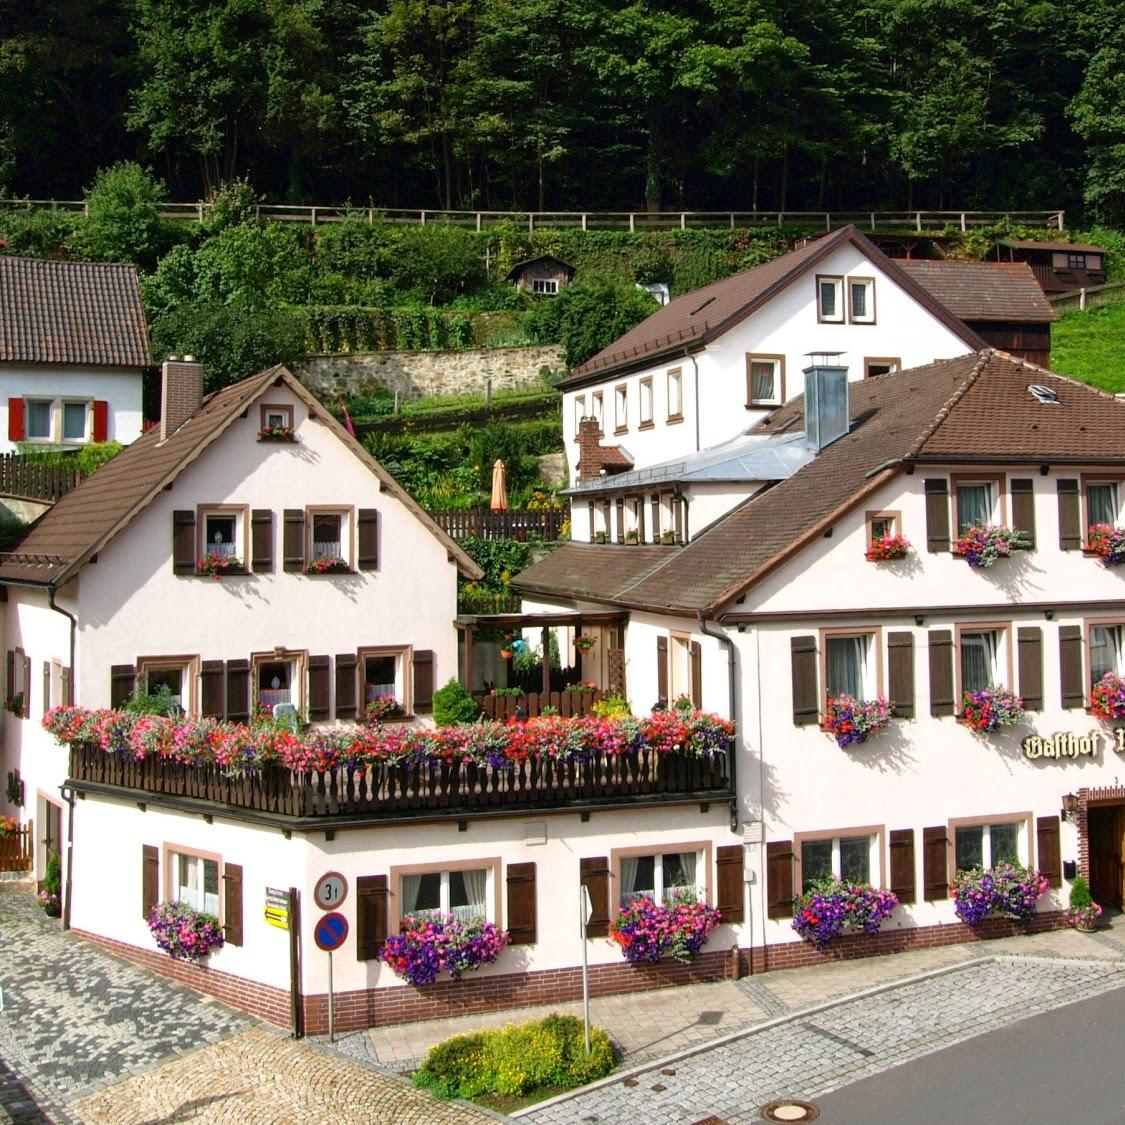 Restaurant "Gasthof Friedrich" in Bad Berneck im Fichtelgebirge